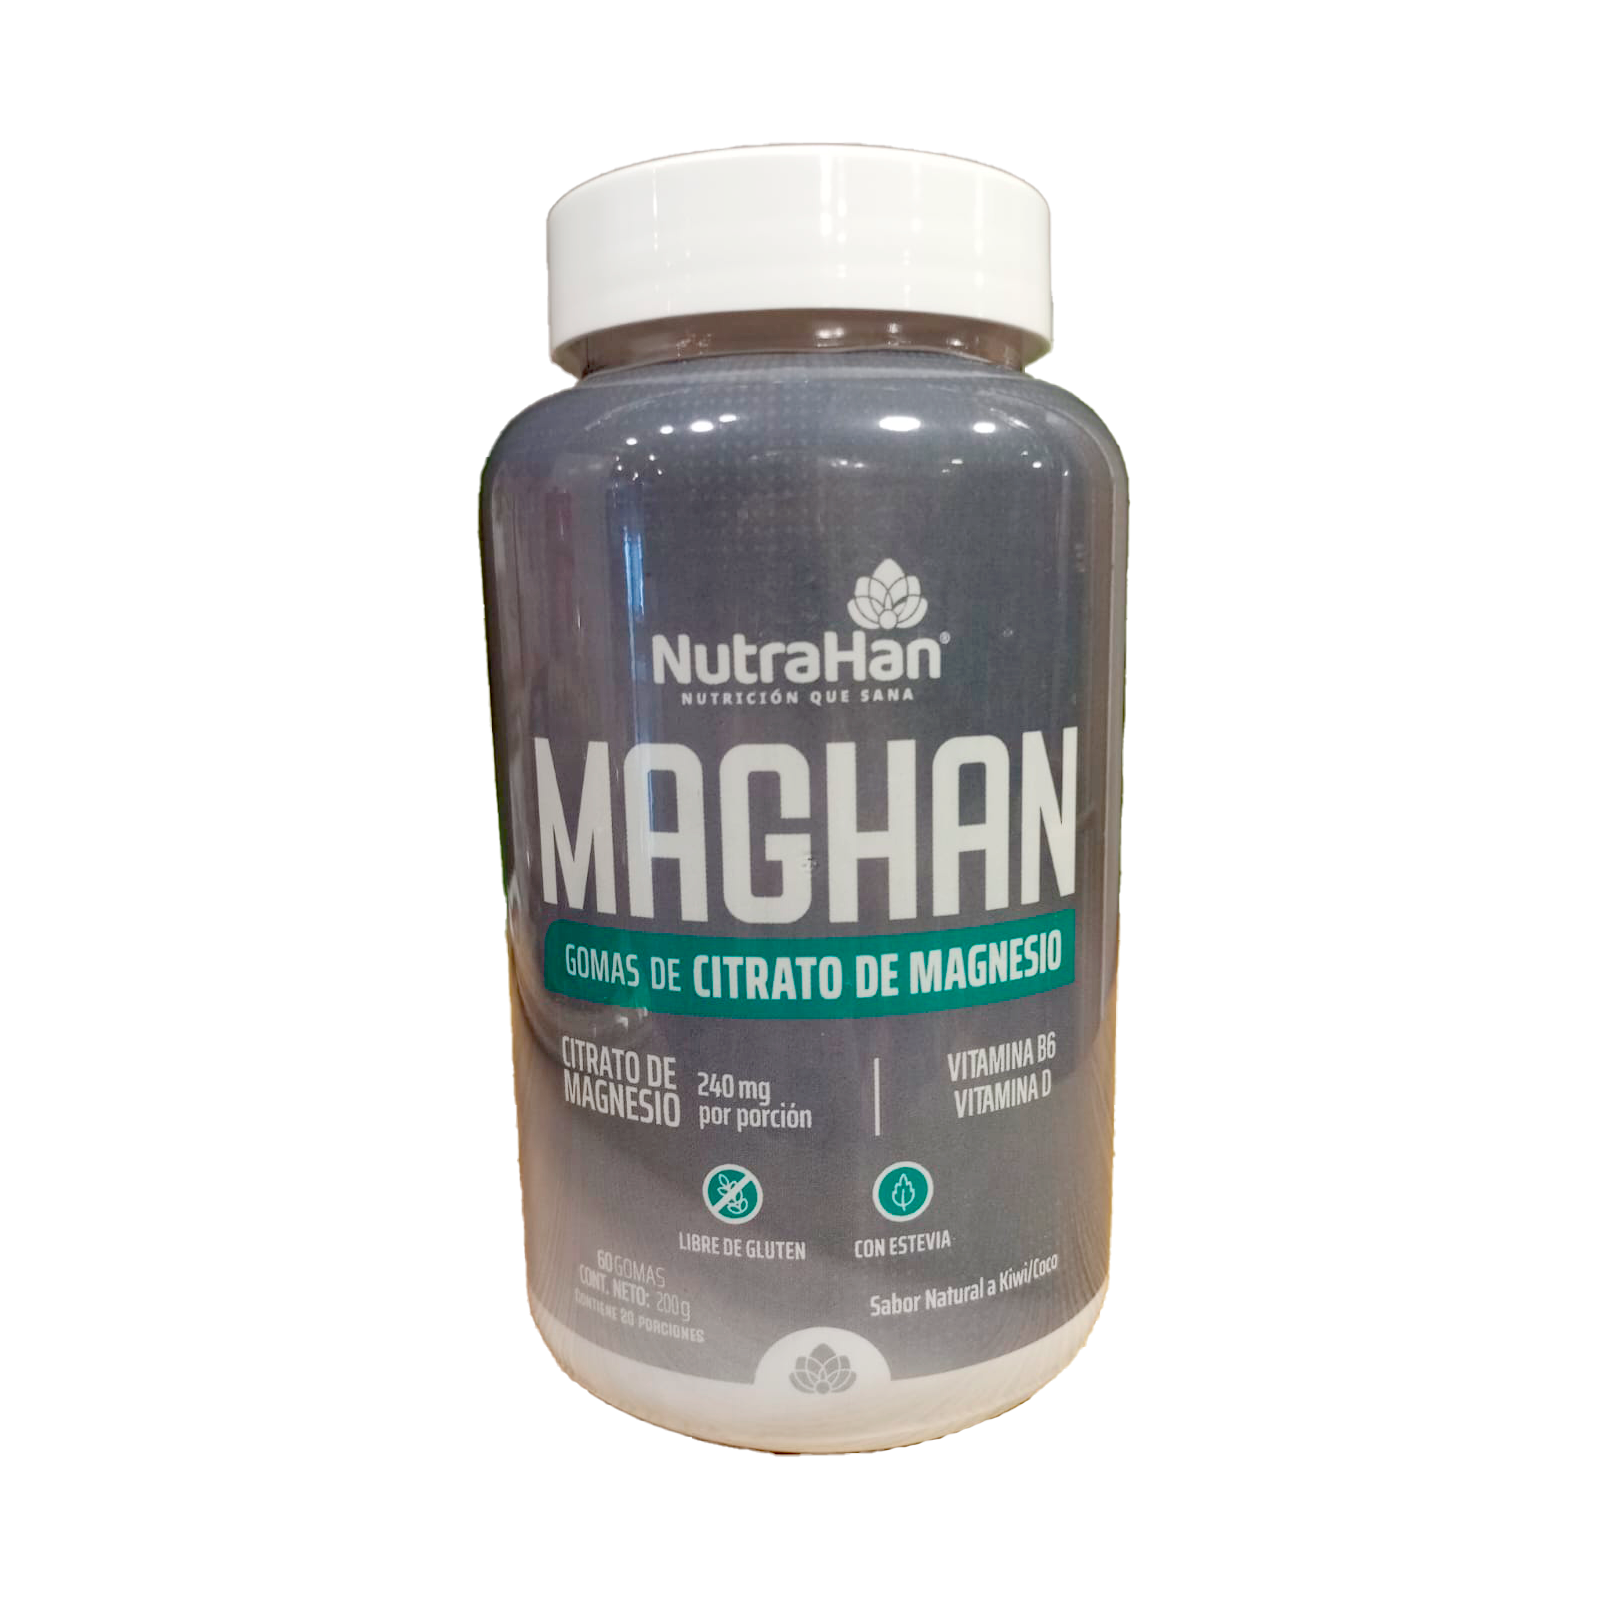 Maghan citrato de magnesio 60 gomas de 240 mg Nutrahan